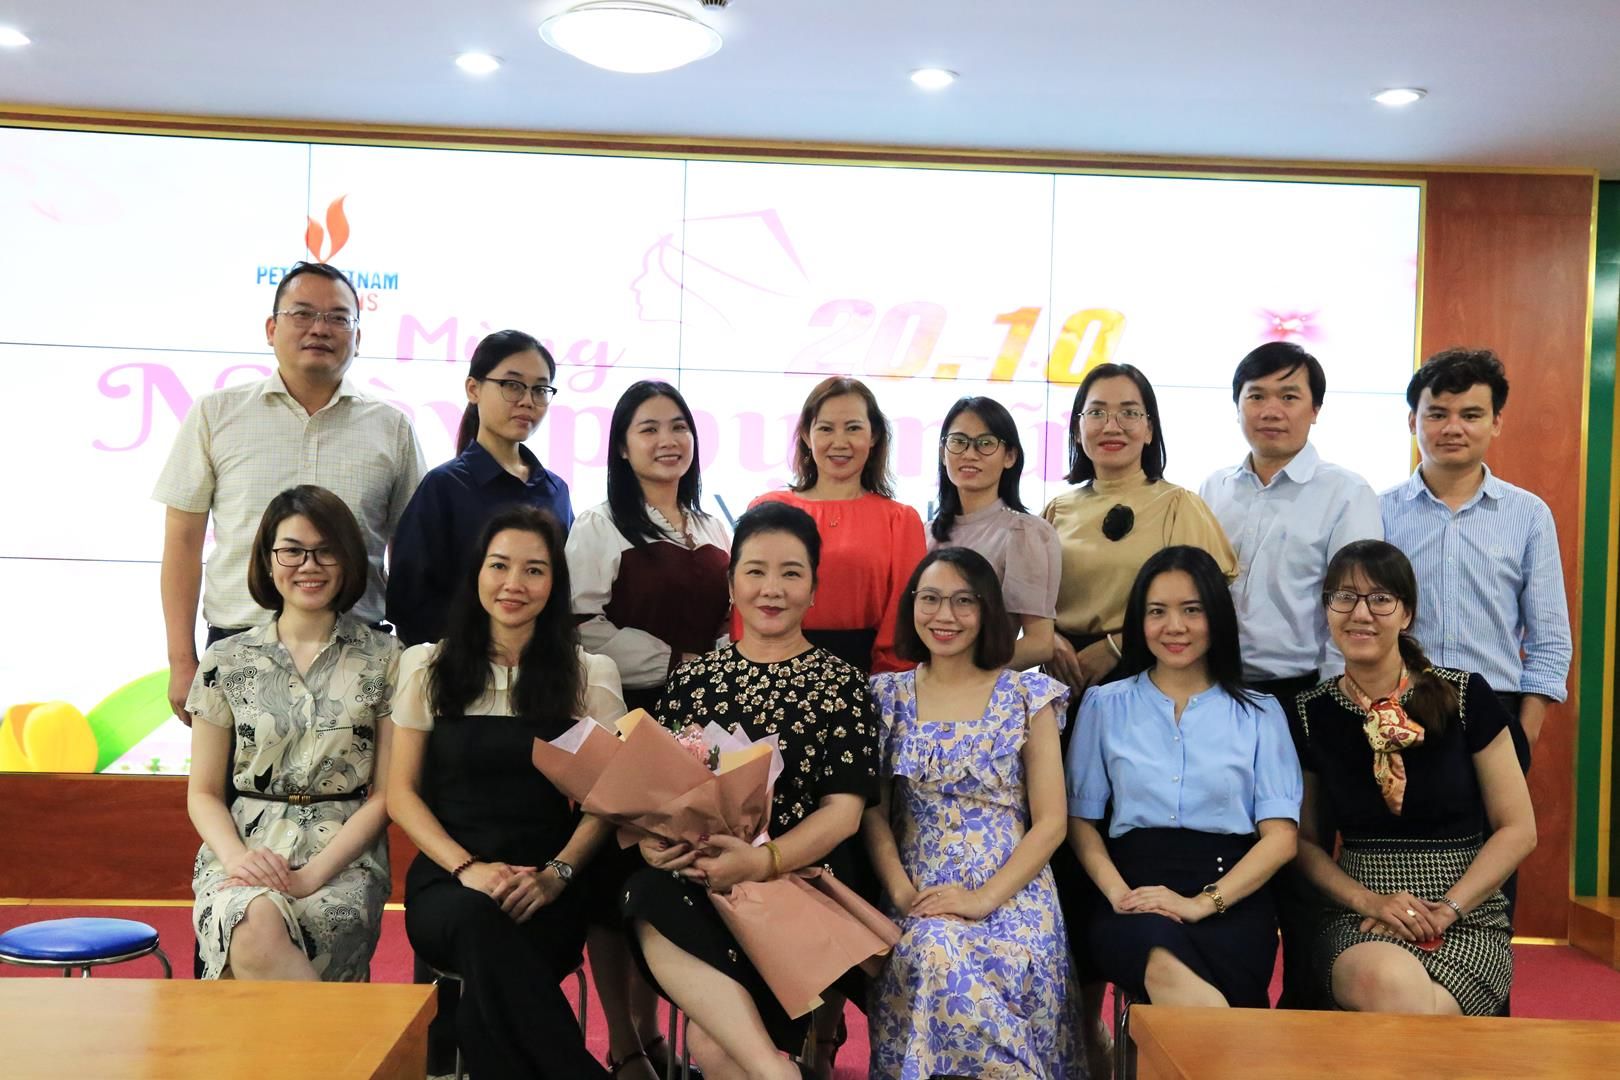 PVTrans kỷ niệm 92 năm ngày thành lập Hội Liên hiệp Phụ nữ Việt Nam